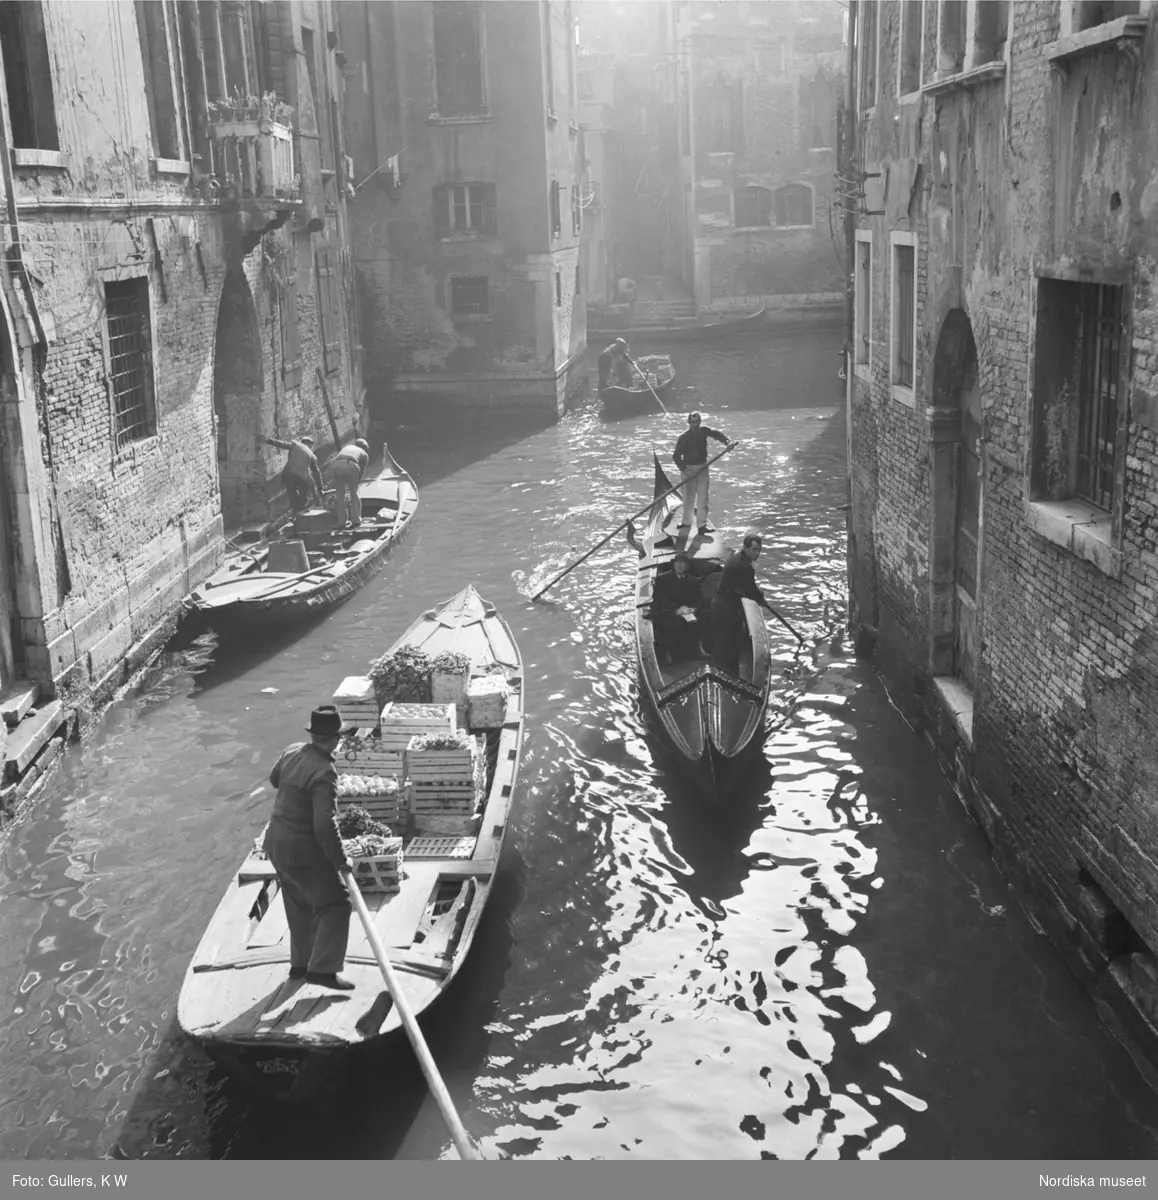 Byggnadsmaterial, grönsaker och människor som forslas med gondoler på Venedigs kanaler